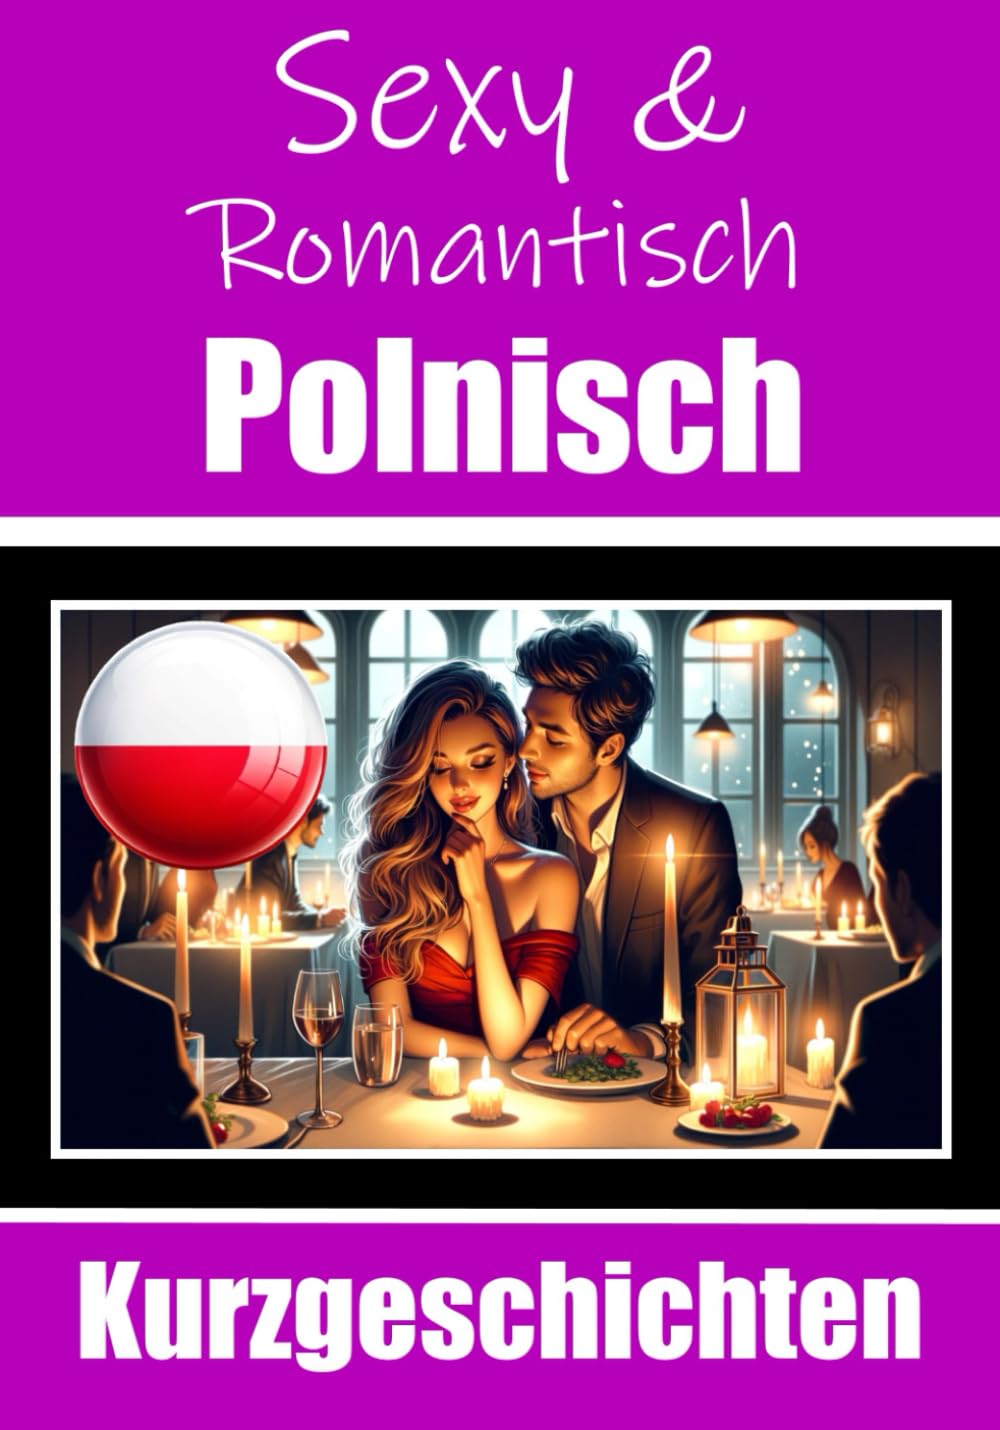 50 Sexy und Romantische Kurzgeschichten auf Polnisch